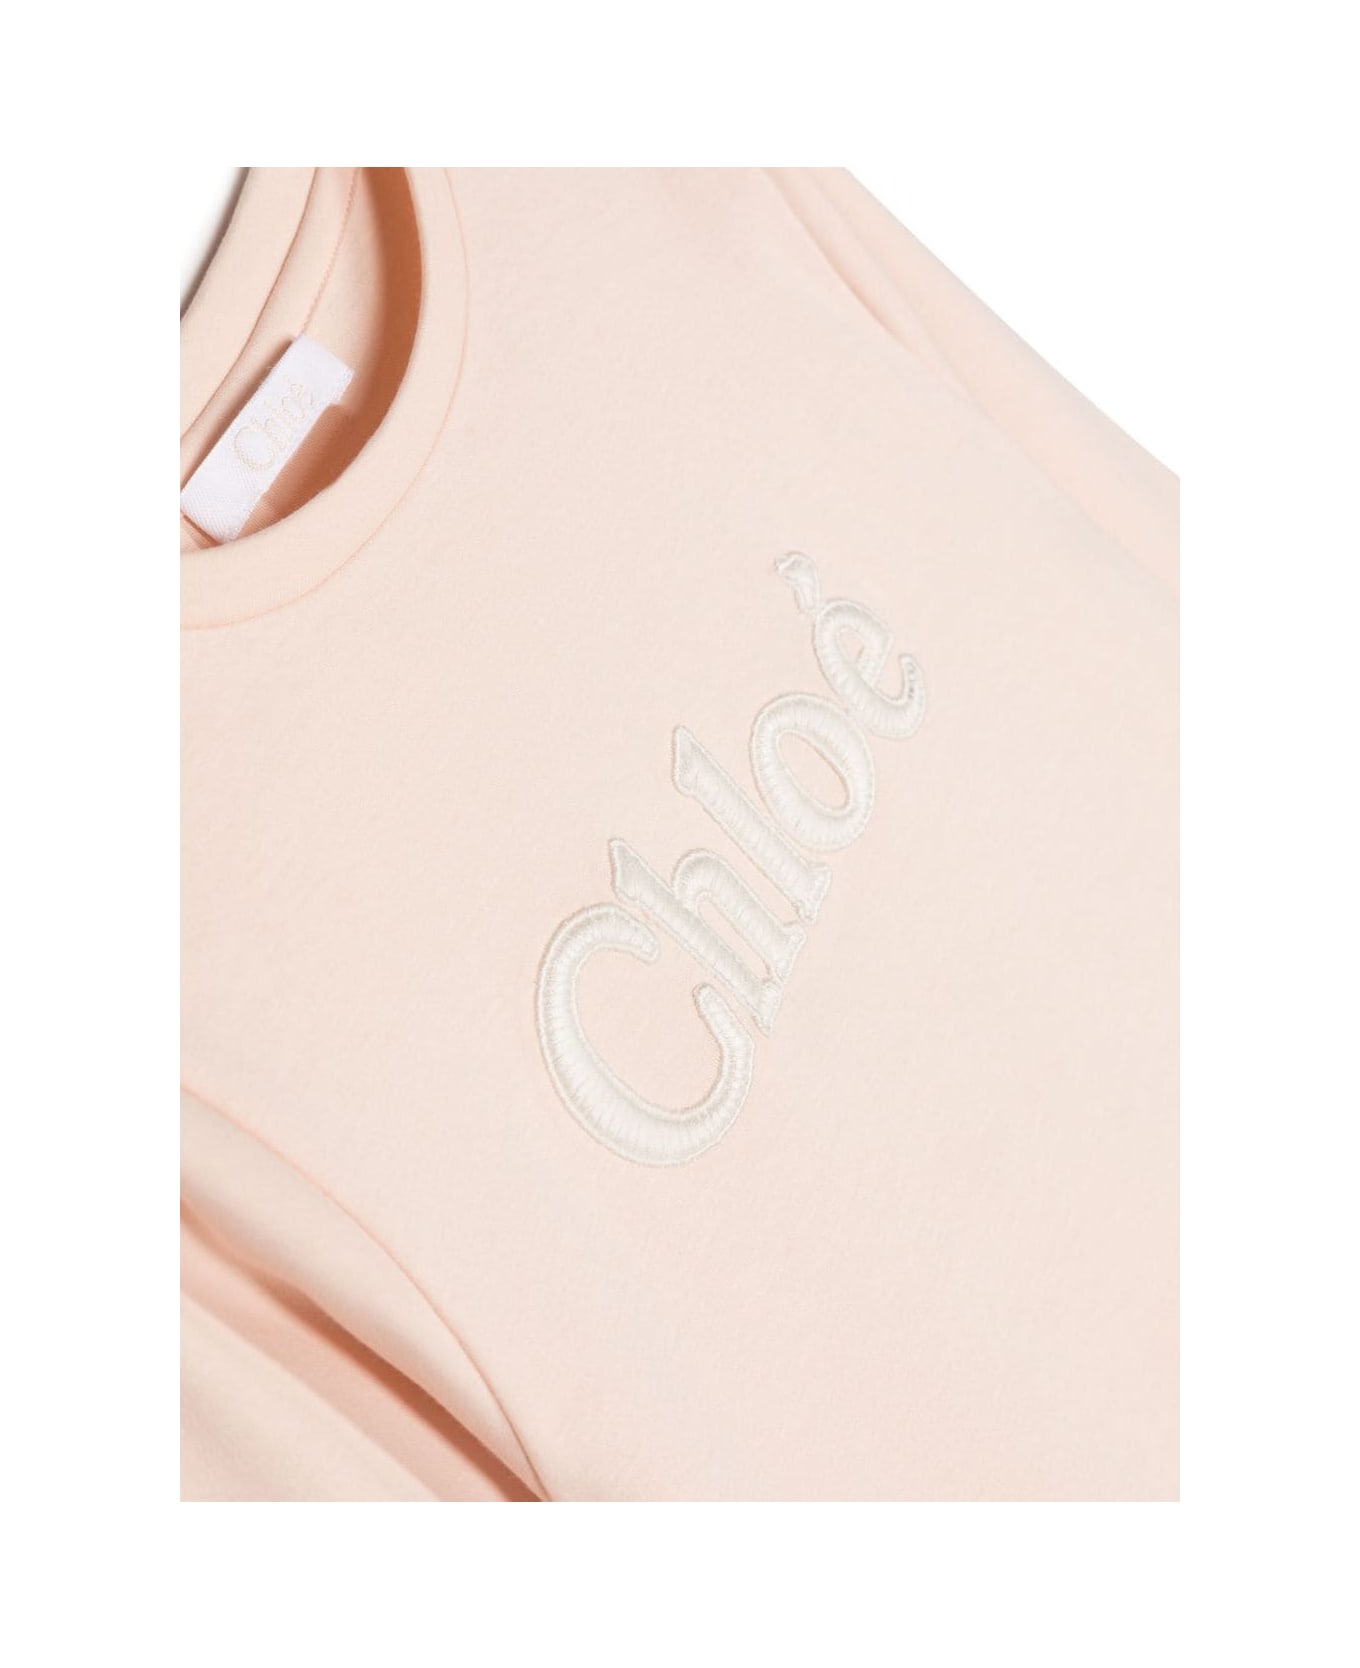 Chloé Chloe T-shirt Bianca Cipria In Jersey Di Cotone Bambina - Bianco